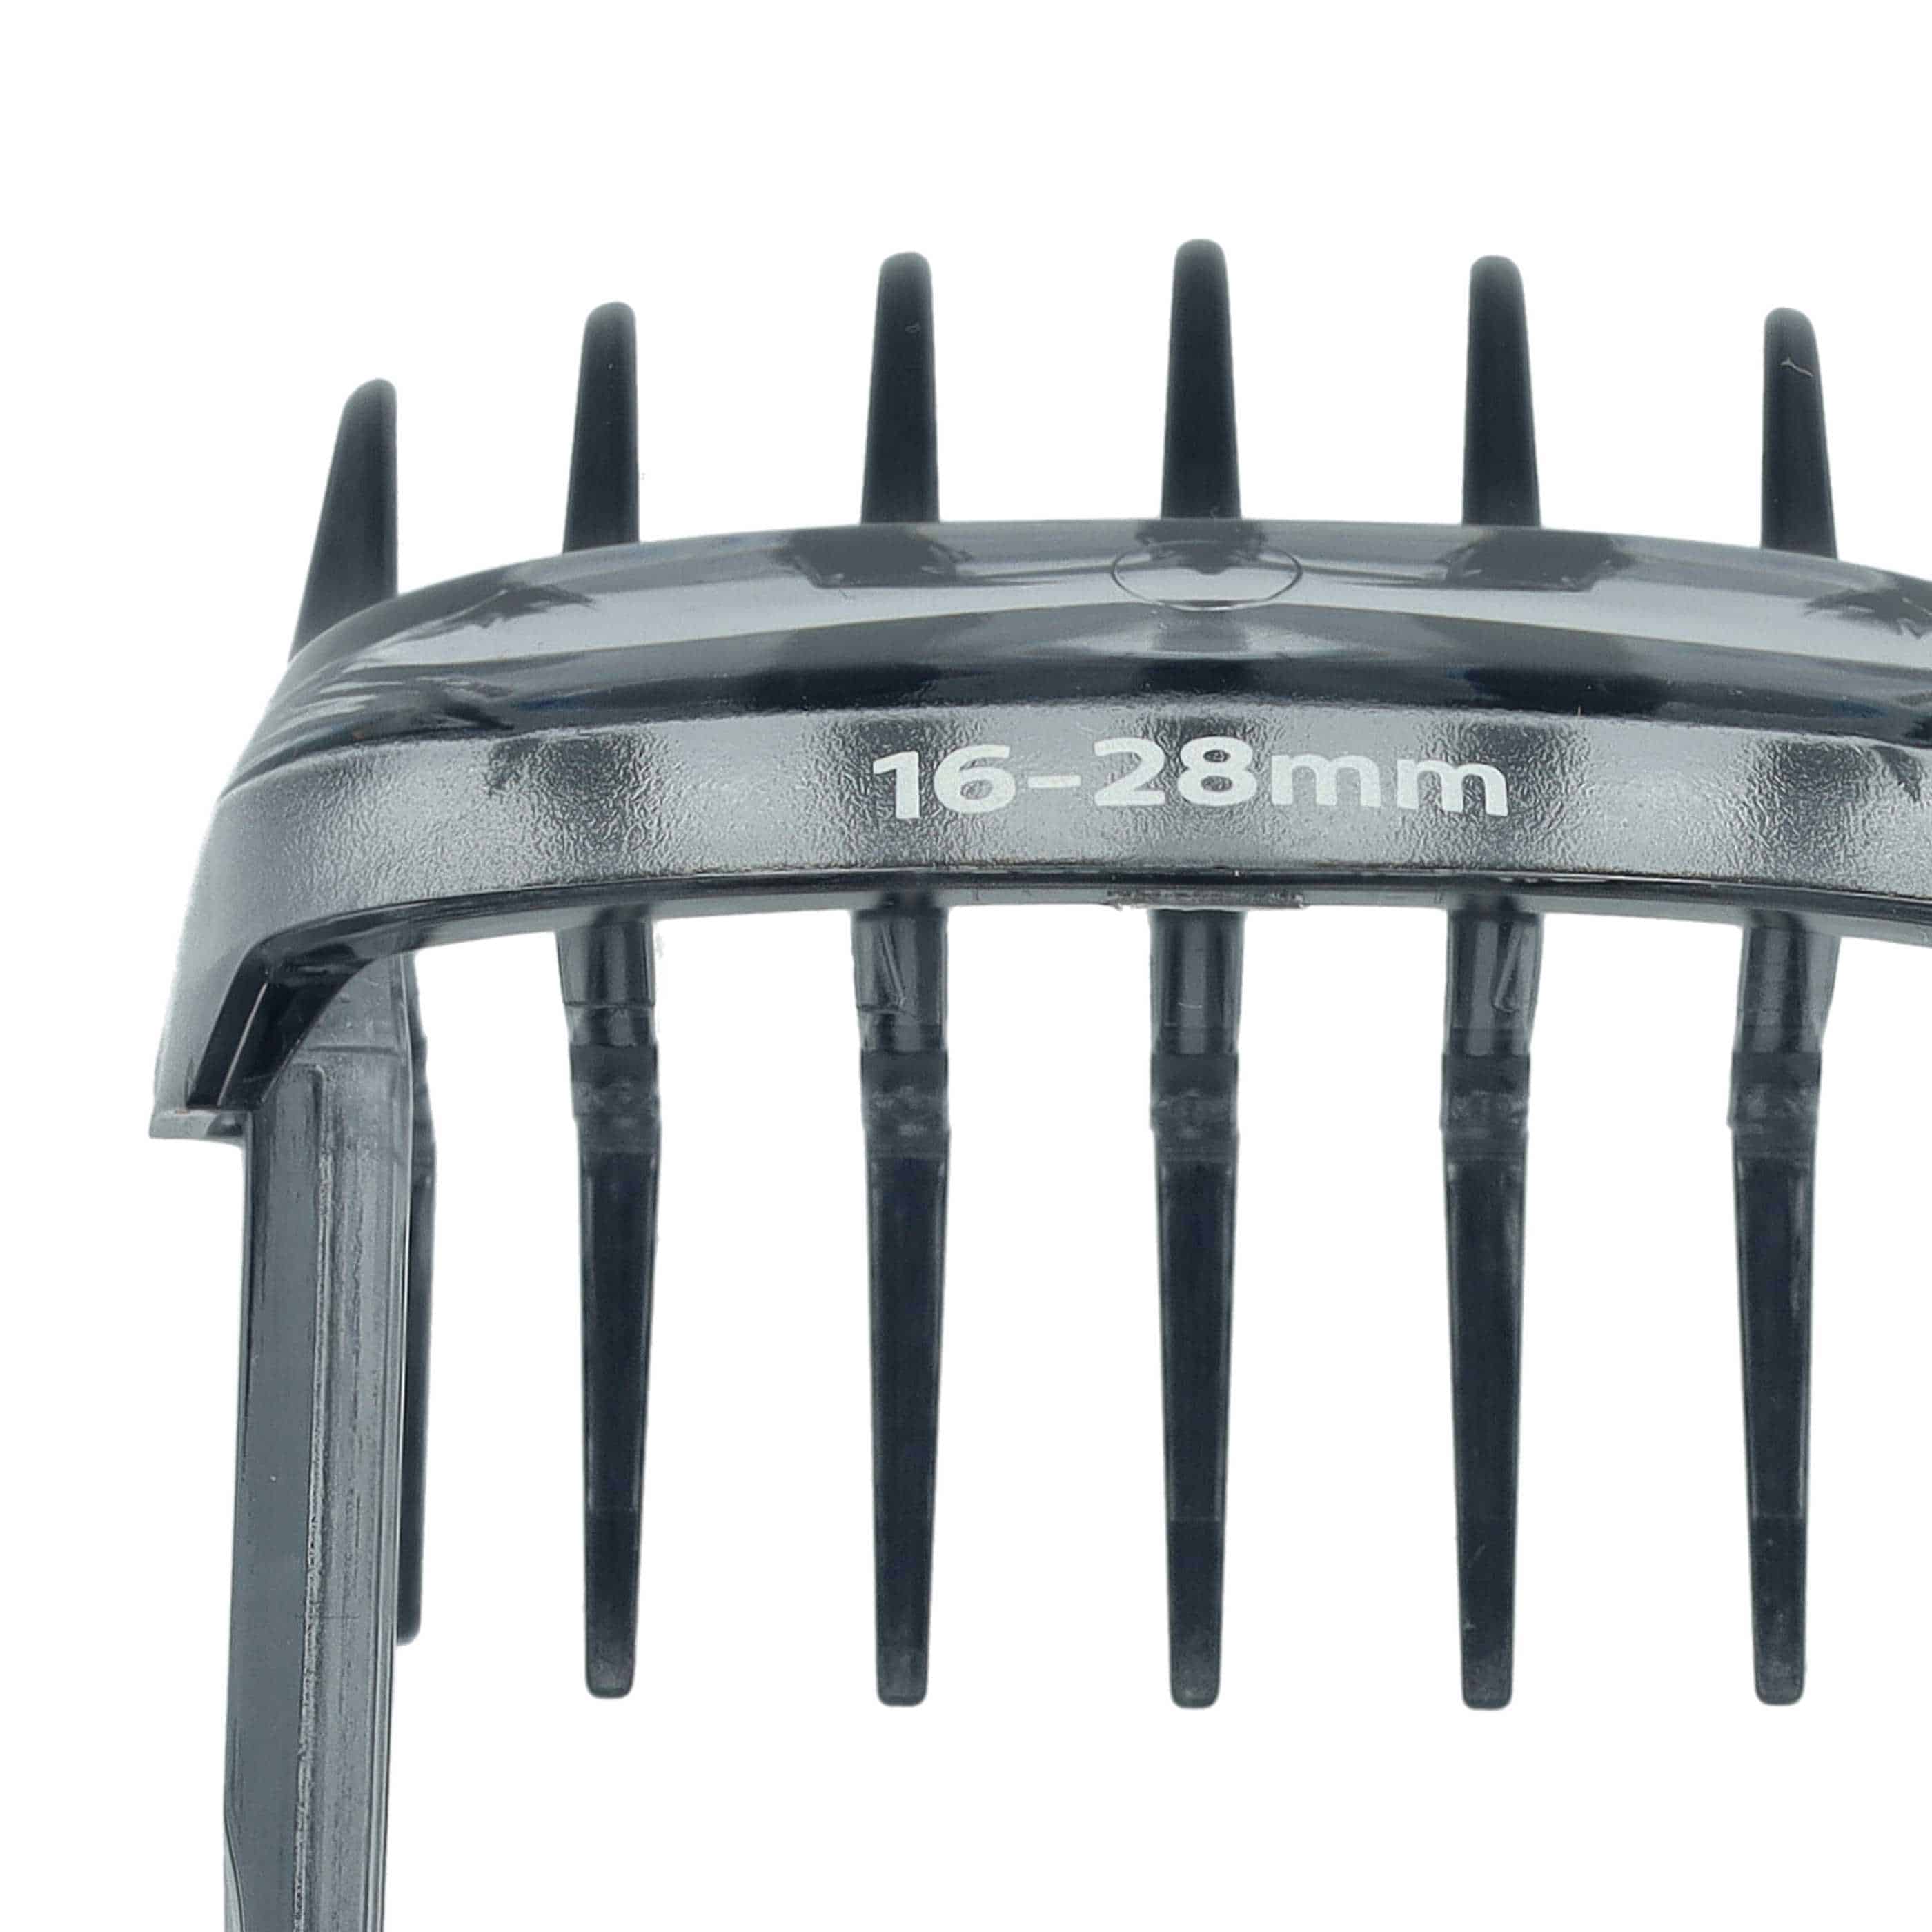 Kammaufsatz 16 - 28 mm als Ersatz für Philips 422203633291, 422203633 für Philips Haarschneidemaschine